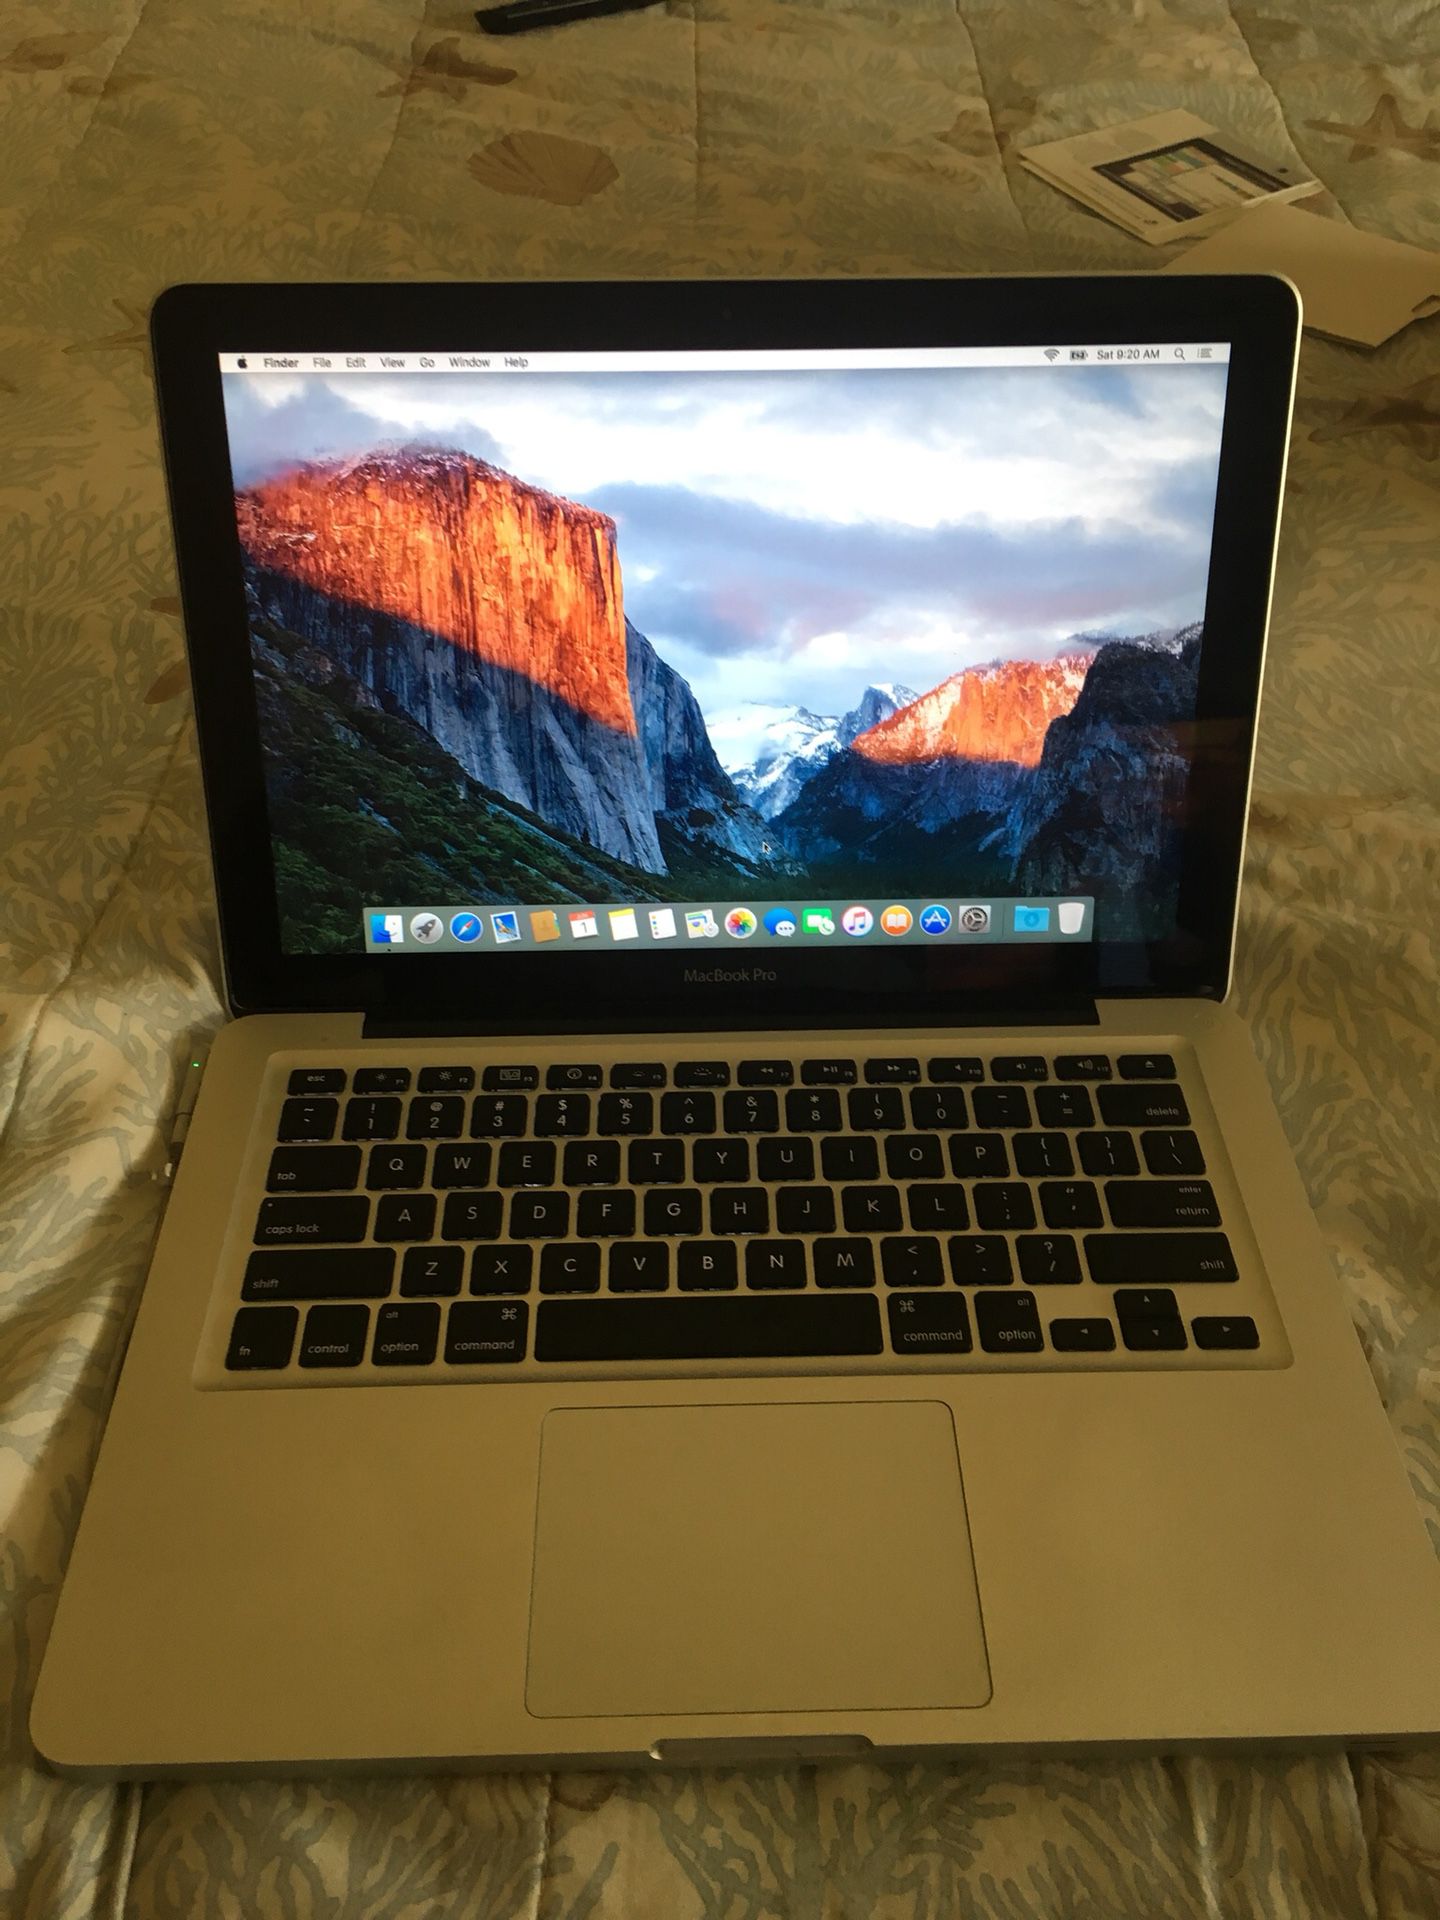 Macbook 13” apple silver el Capitan OS